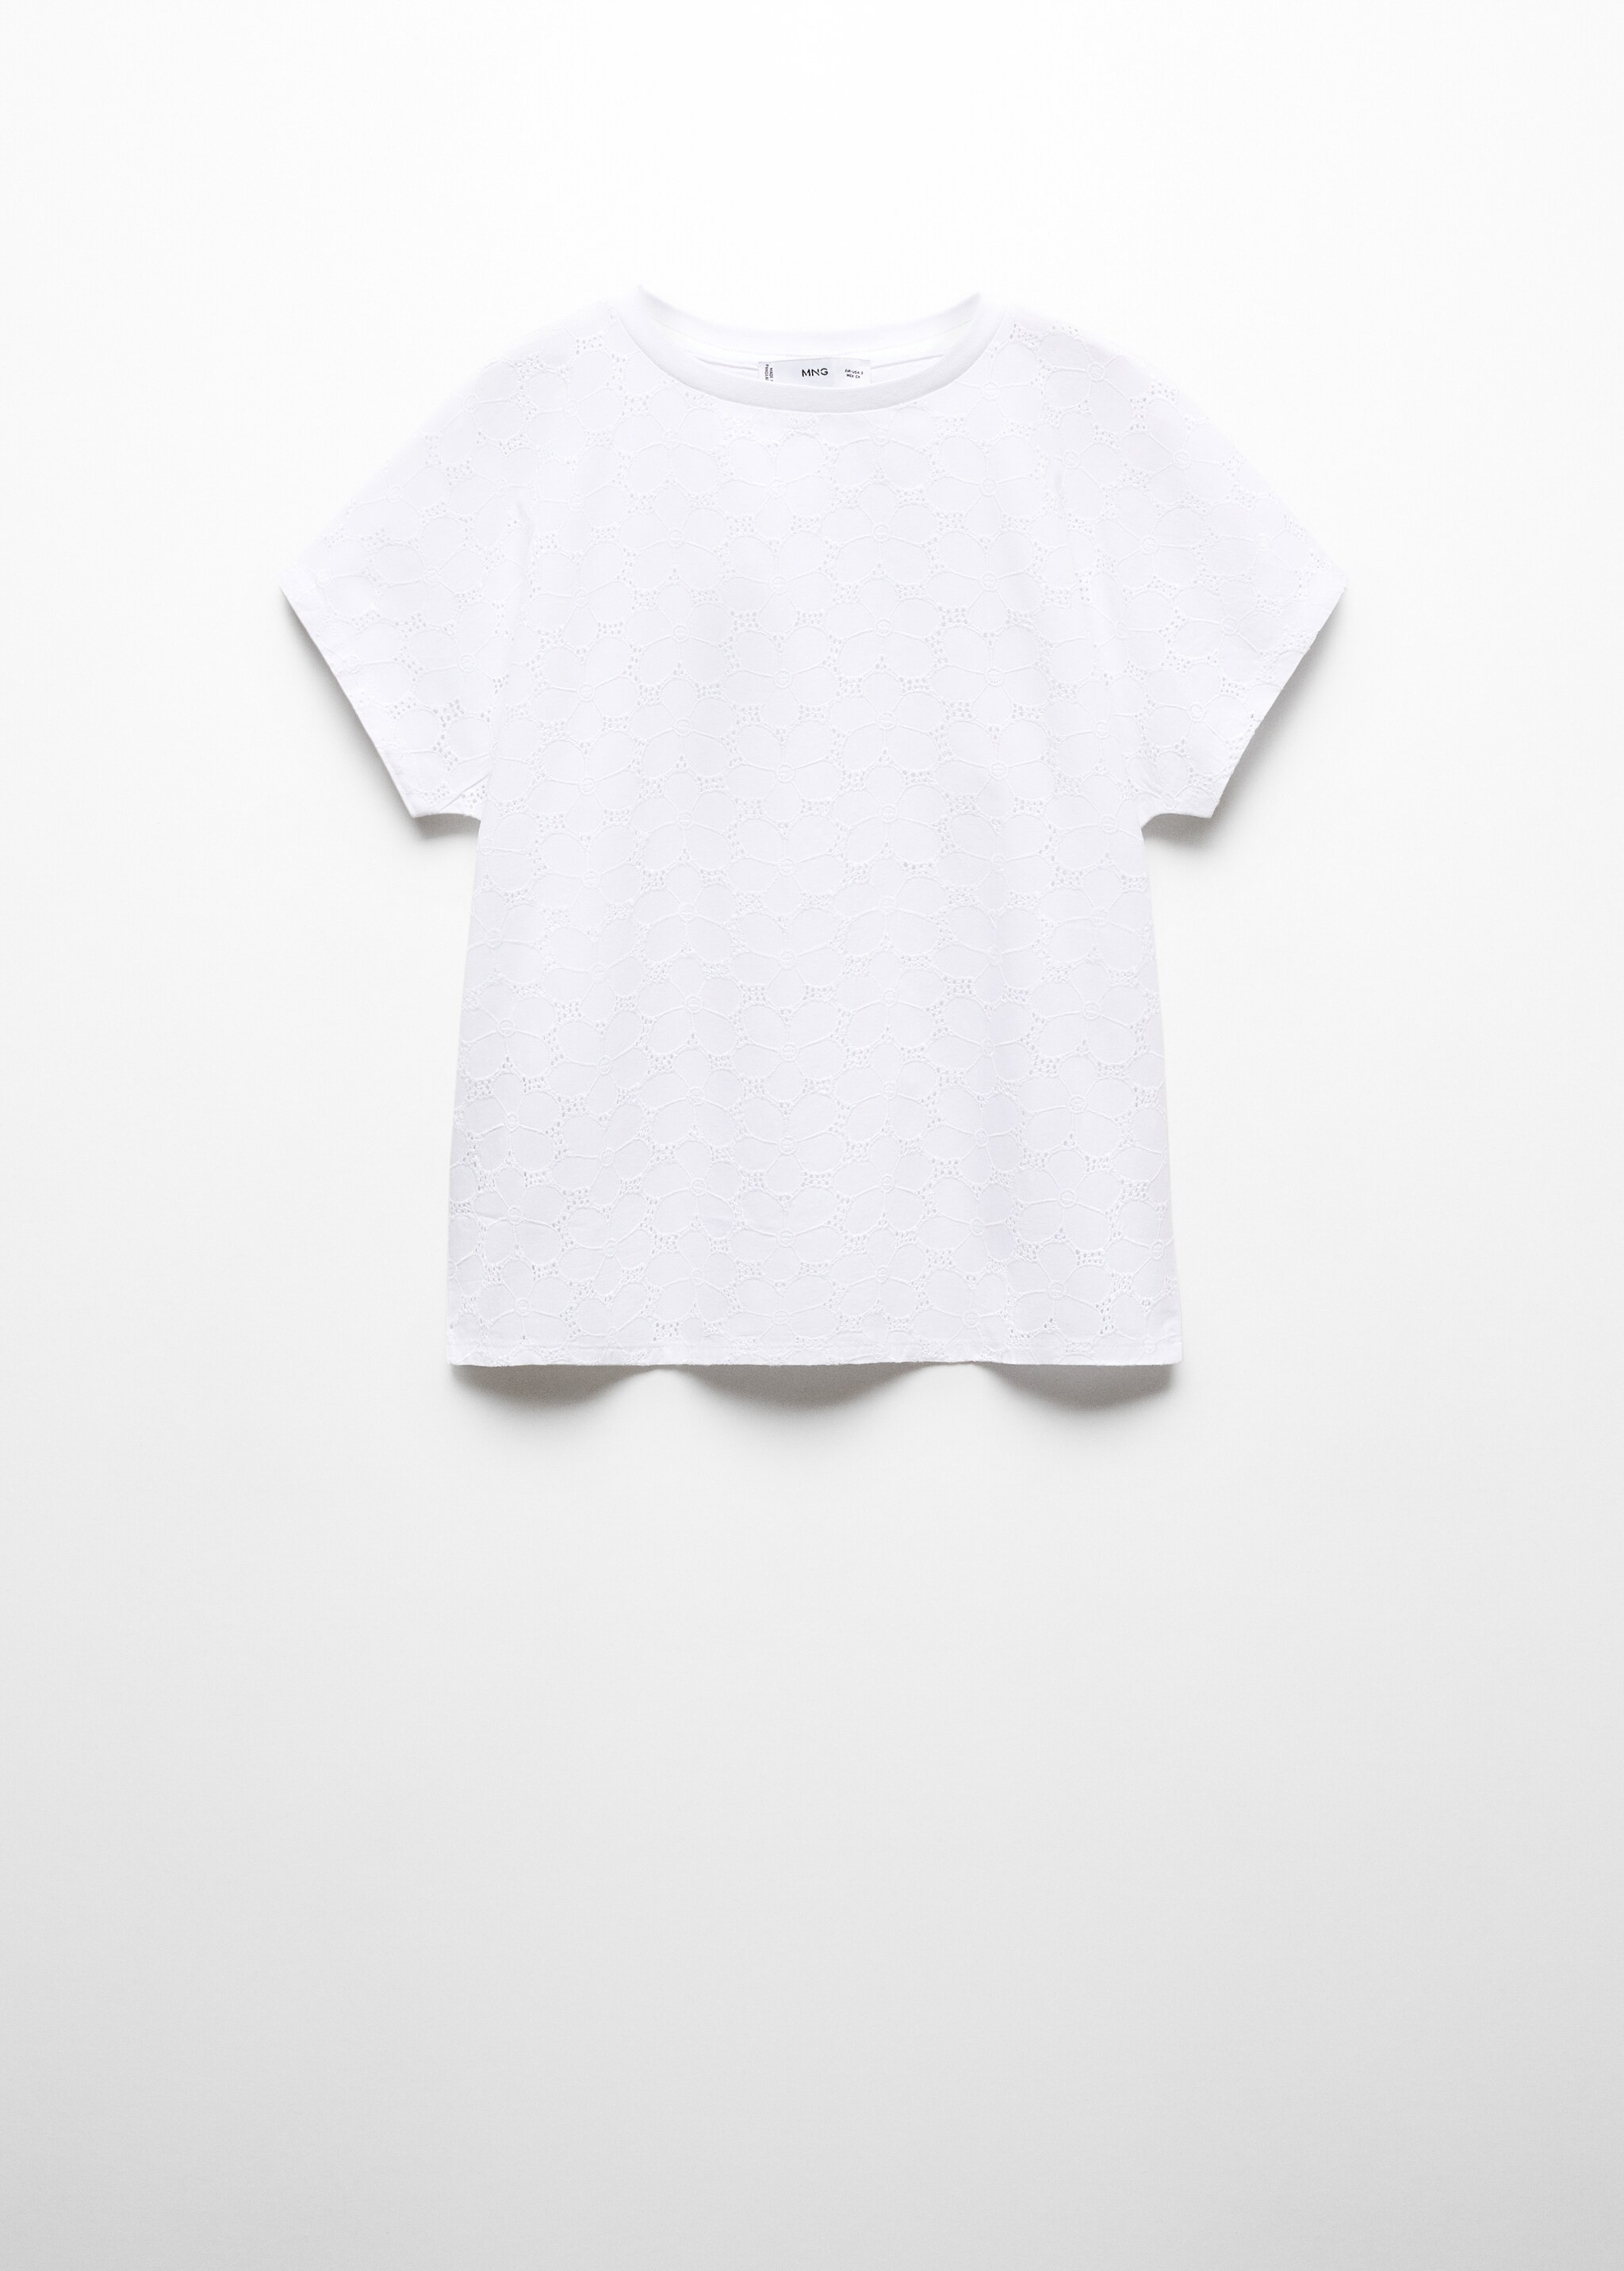 T-shirt rendada algodão - Artigo sem modelo